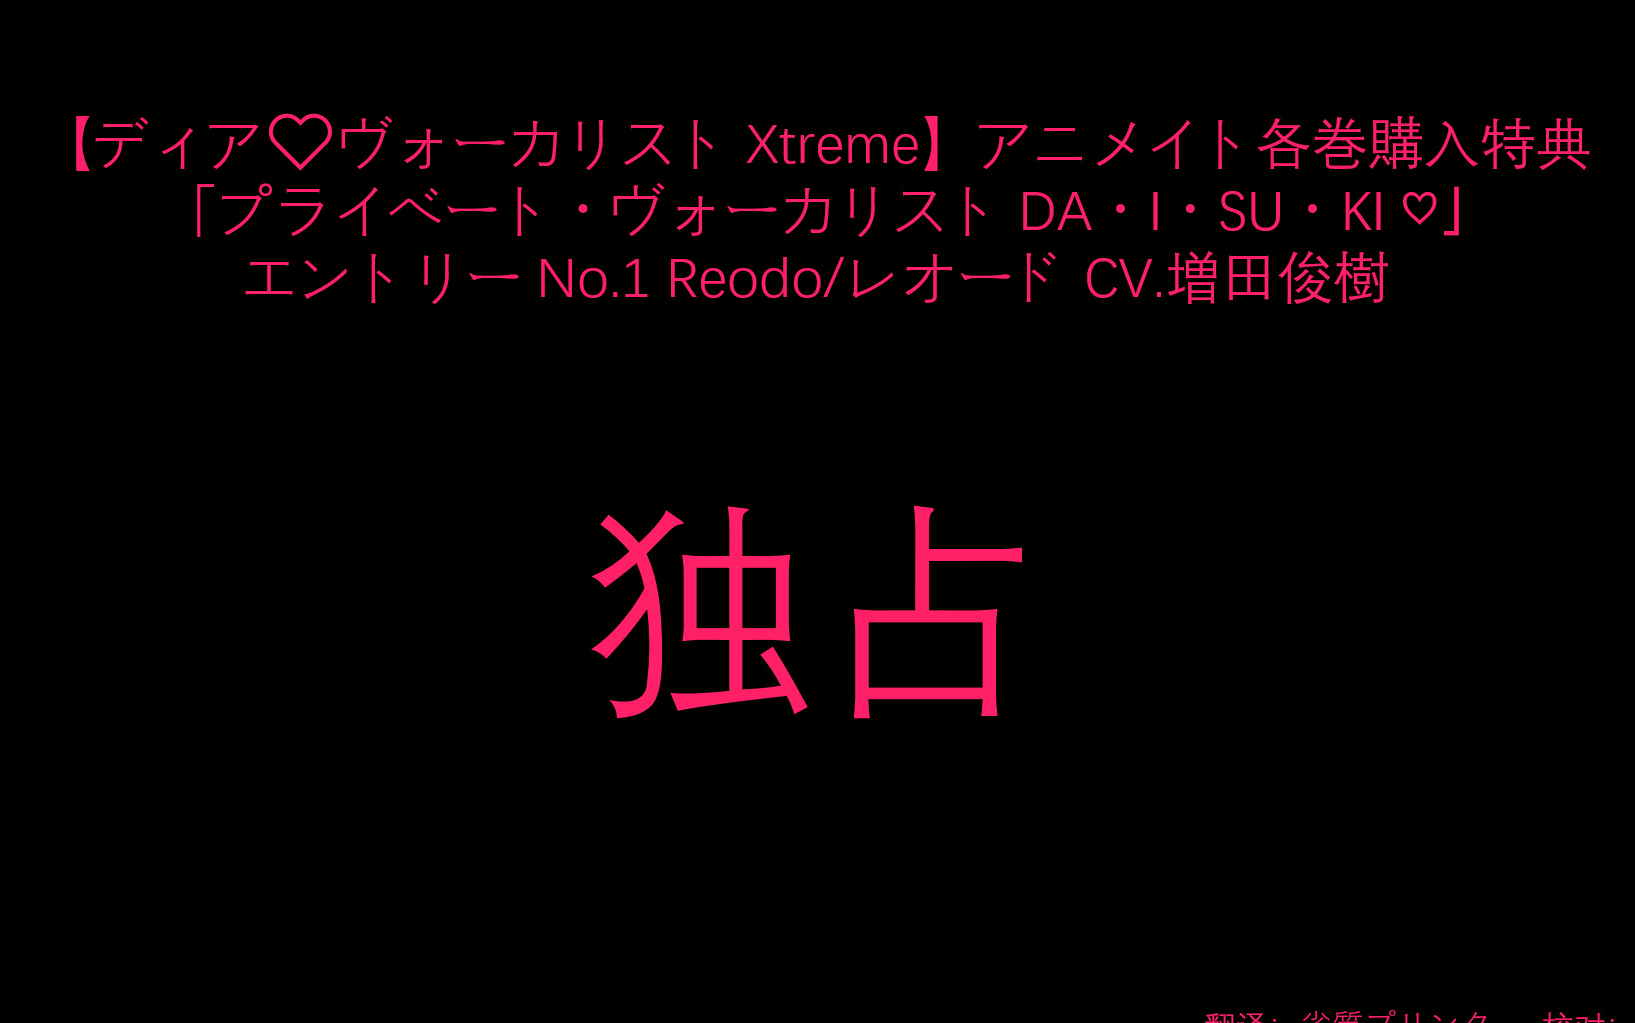 【字幕】【Dear Vocalist Xtreme】【A店特典Drama CD】Reodo/レオード CV.増田俊樹